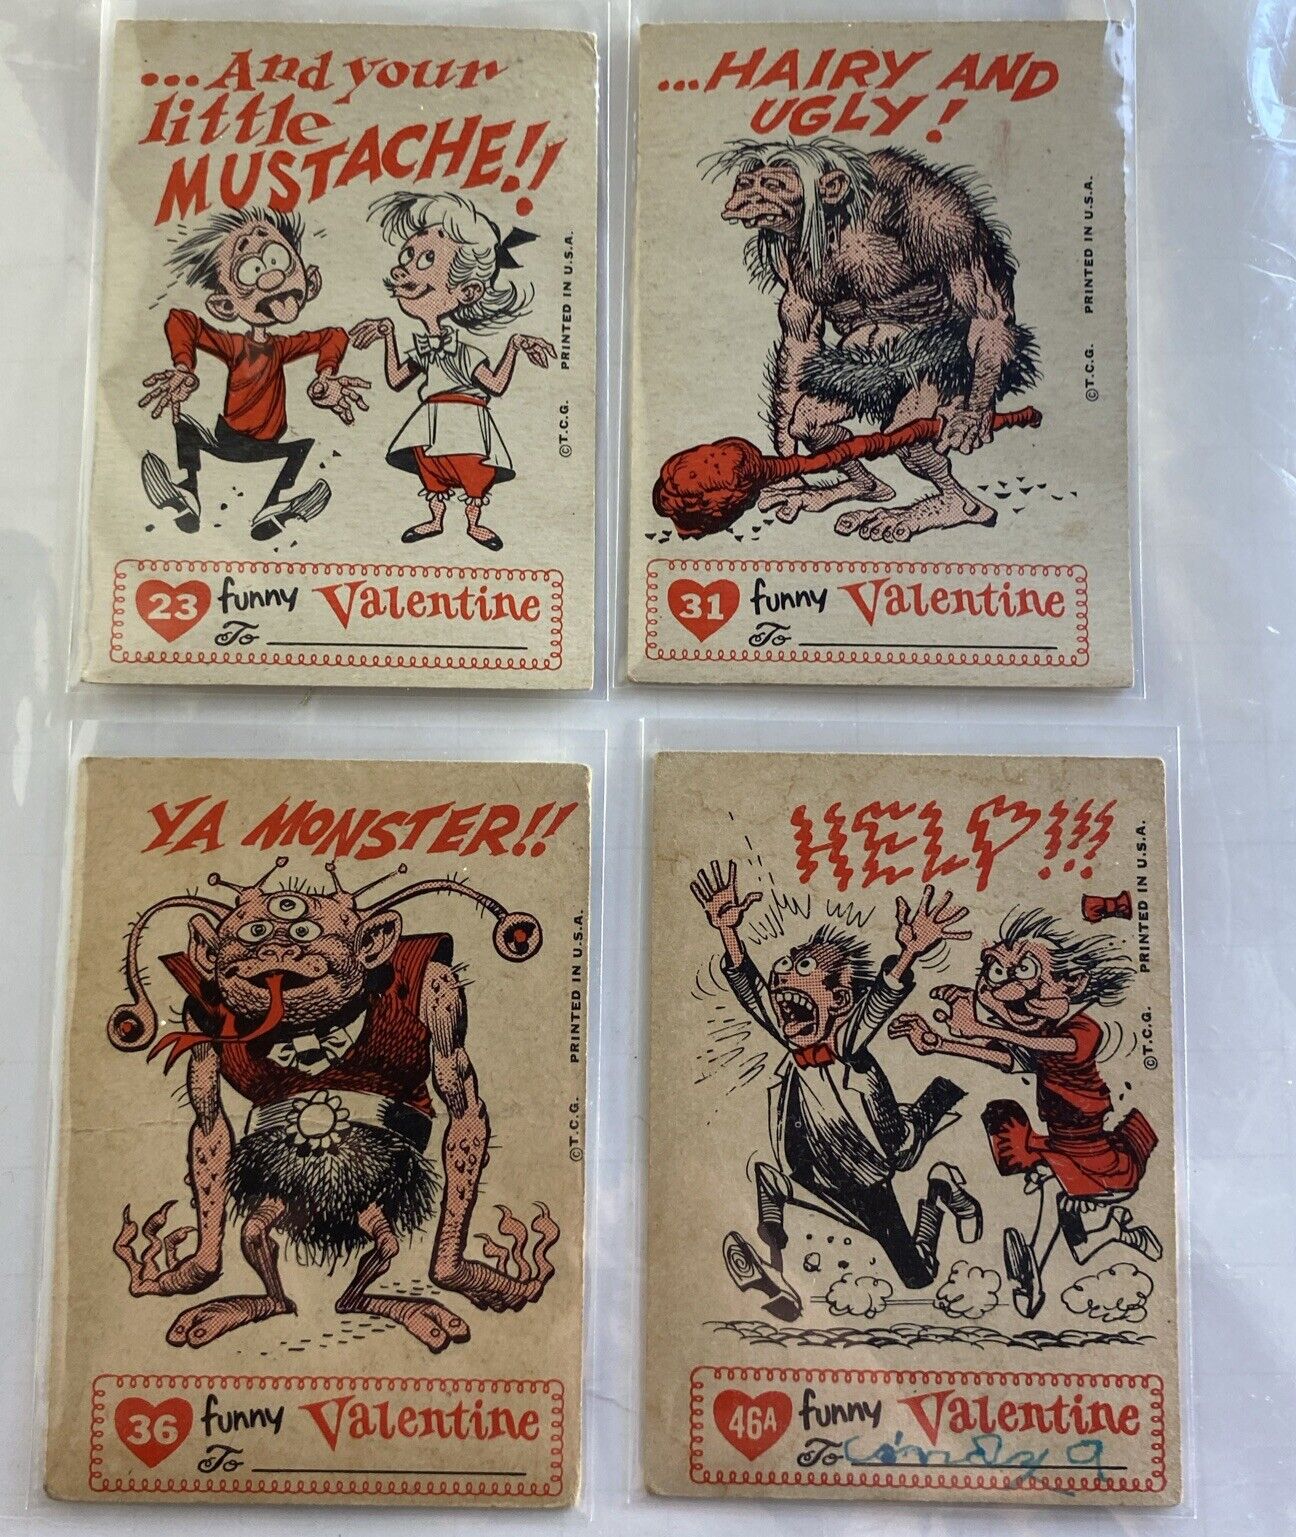 1959 Topps Vintage Funny Valentine Cards 4 card lot No Dups Jack Davis art